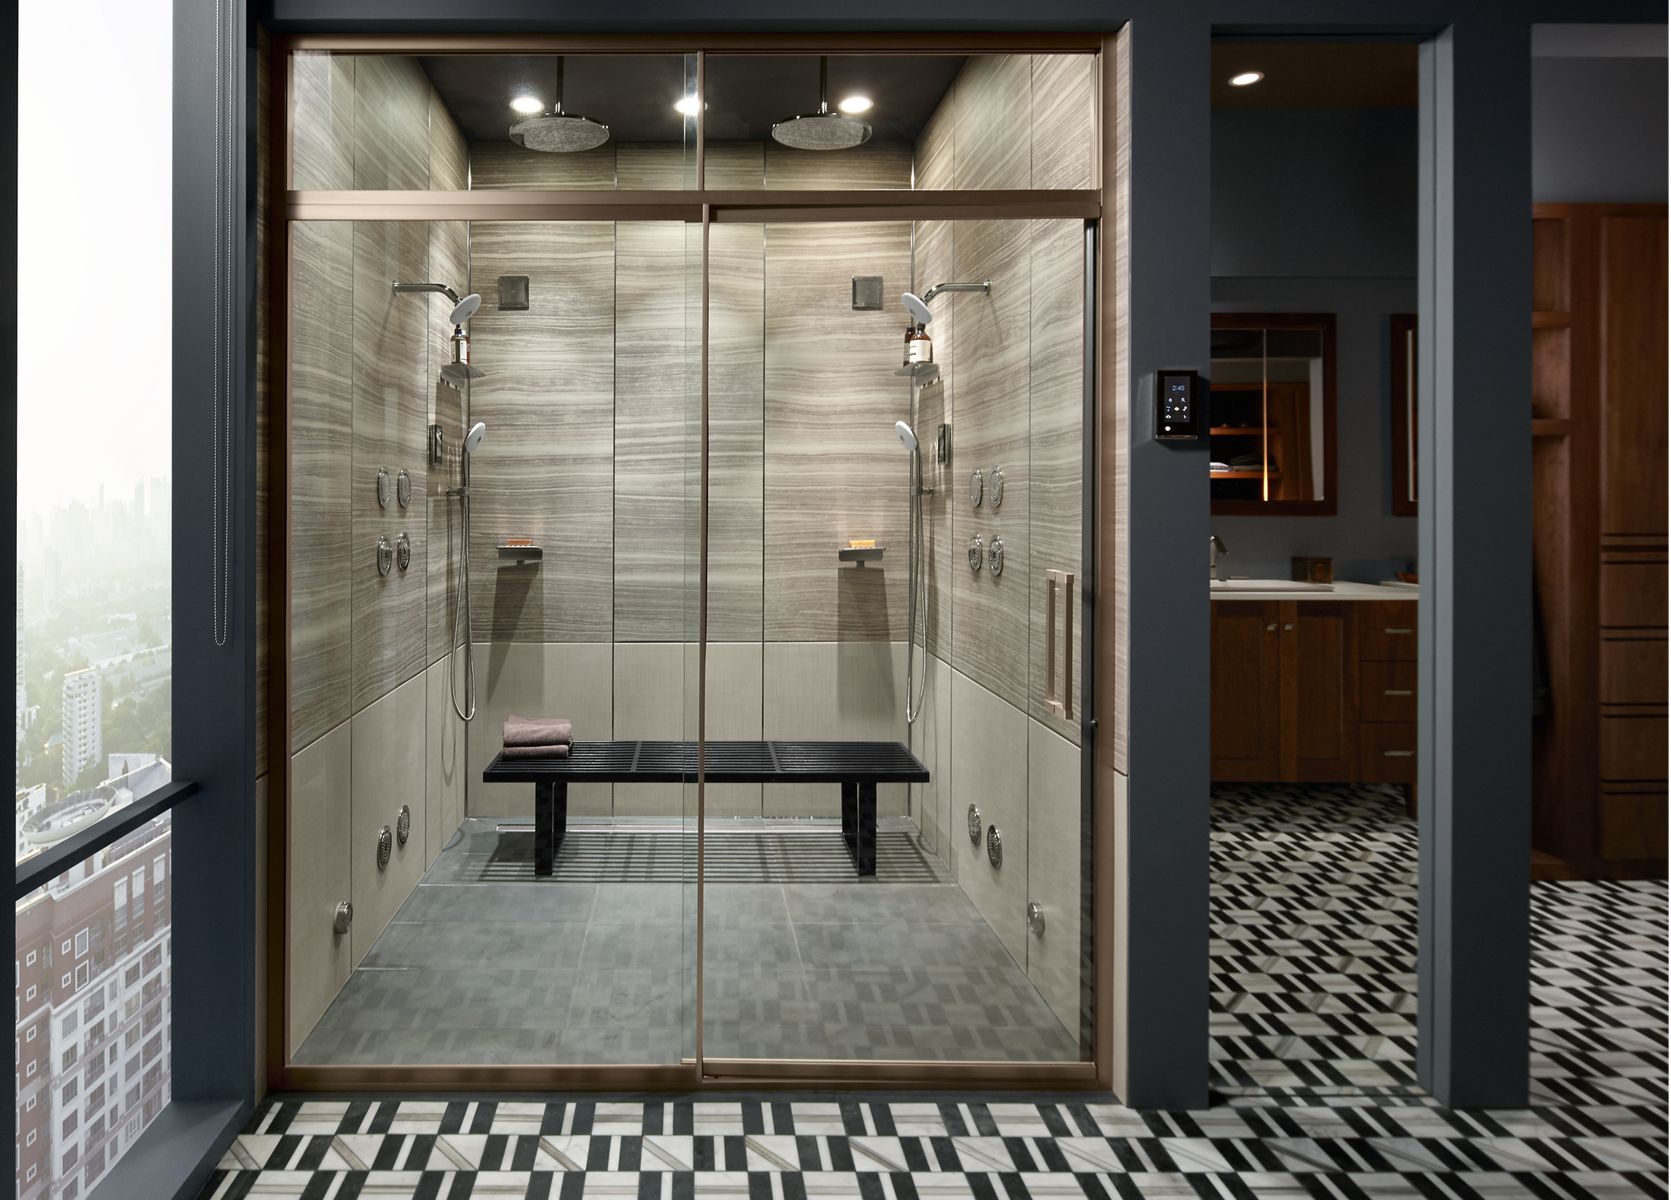 KOHLER Bathroom Design Service | KOHLER